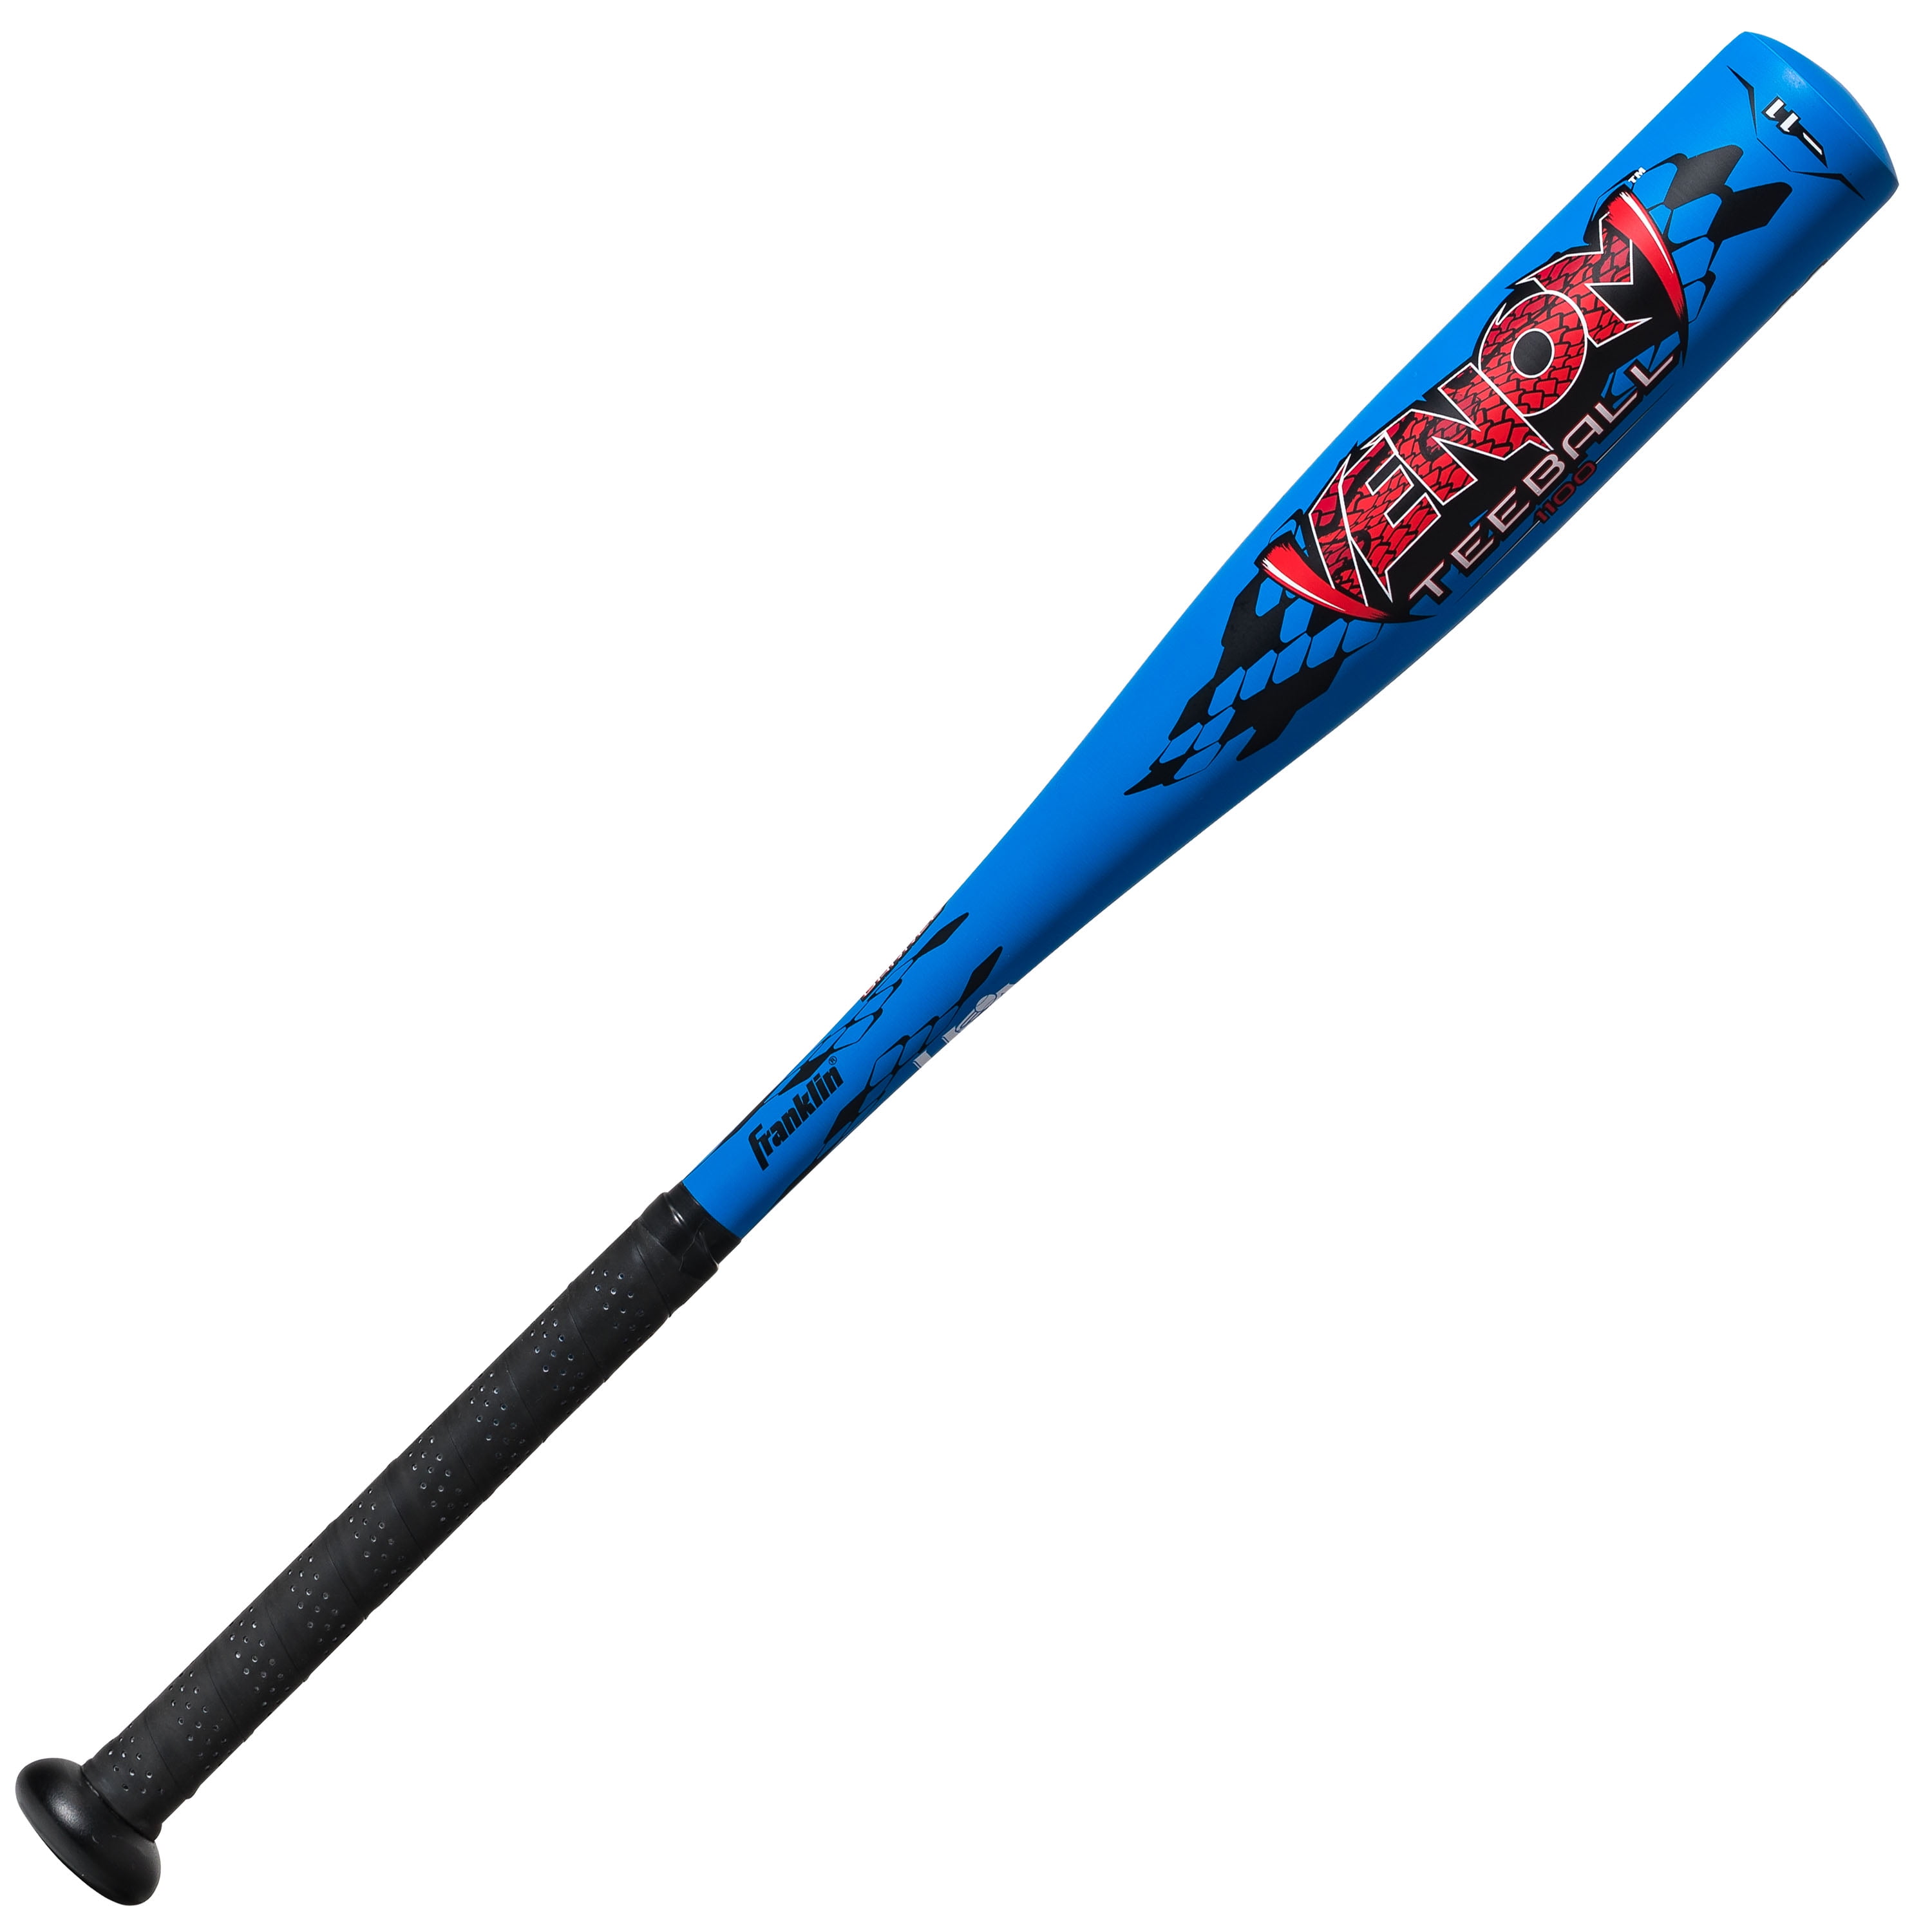 Franklin 26" TEEBALL BAT "Inferno" Aluminum Bat Bat Baseball 